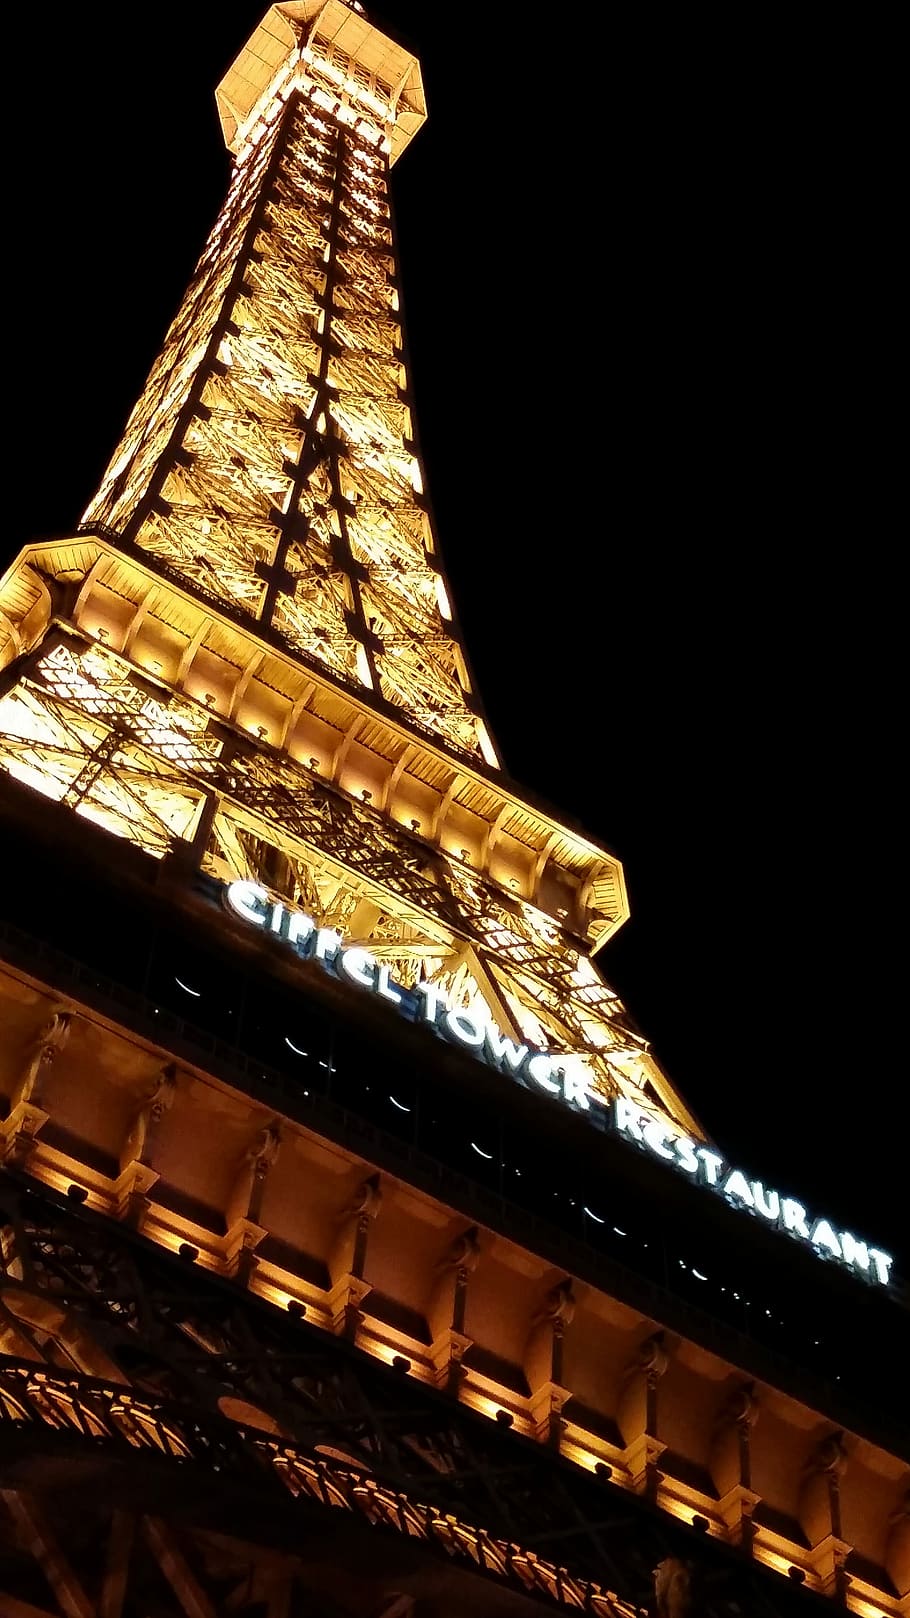 Hotel Paris, Paris, Hotel, Las Vegas, hotel, vegas, eiffel tower, gold colored, night, illuminated, architecture